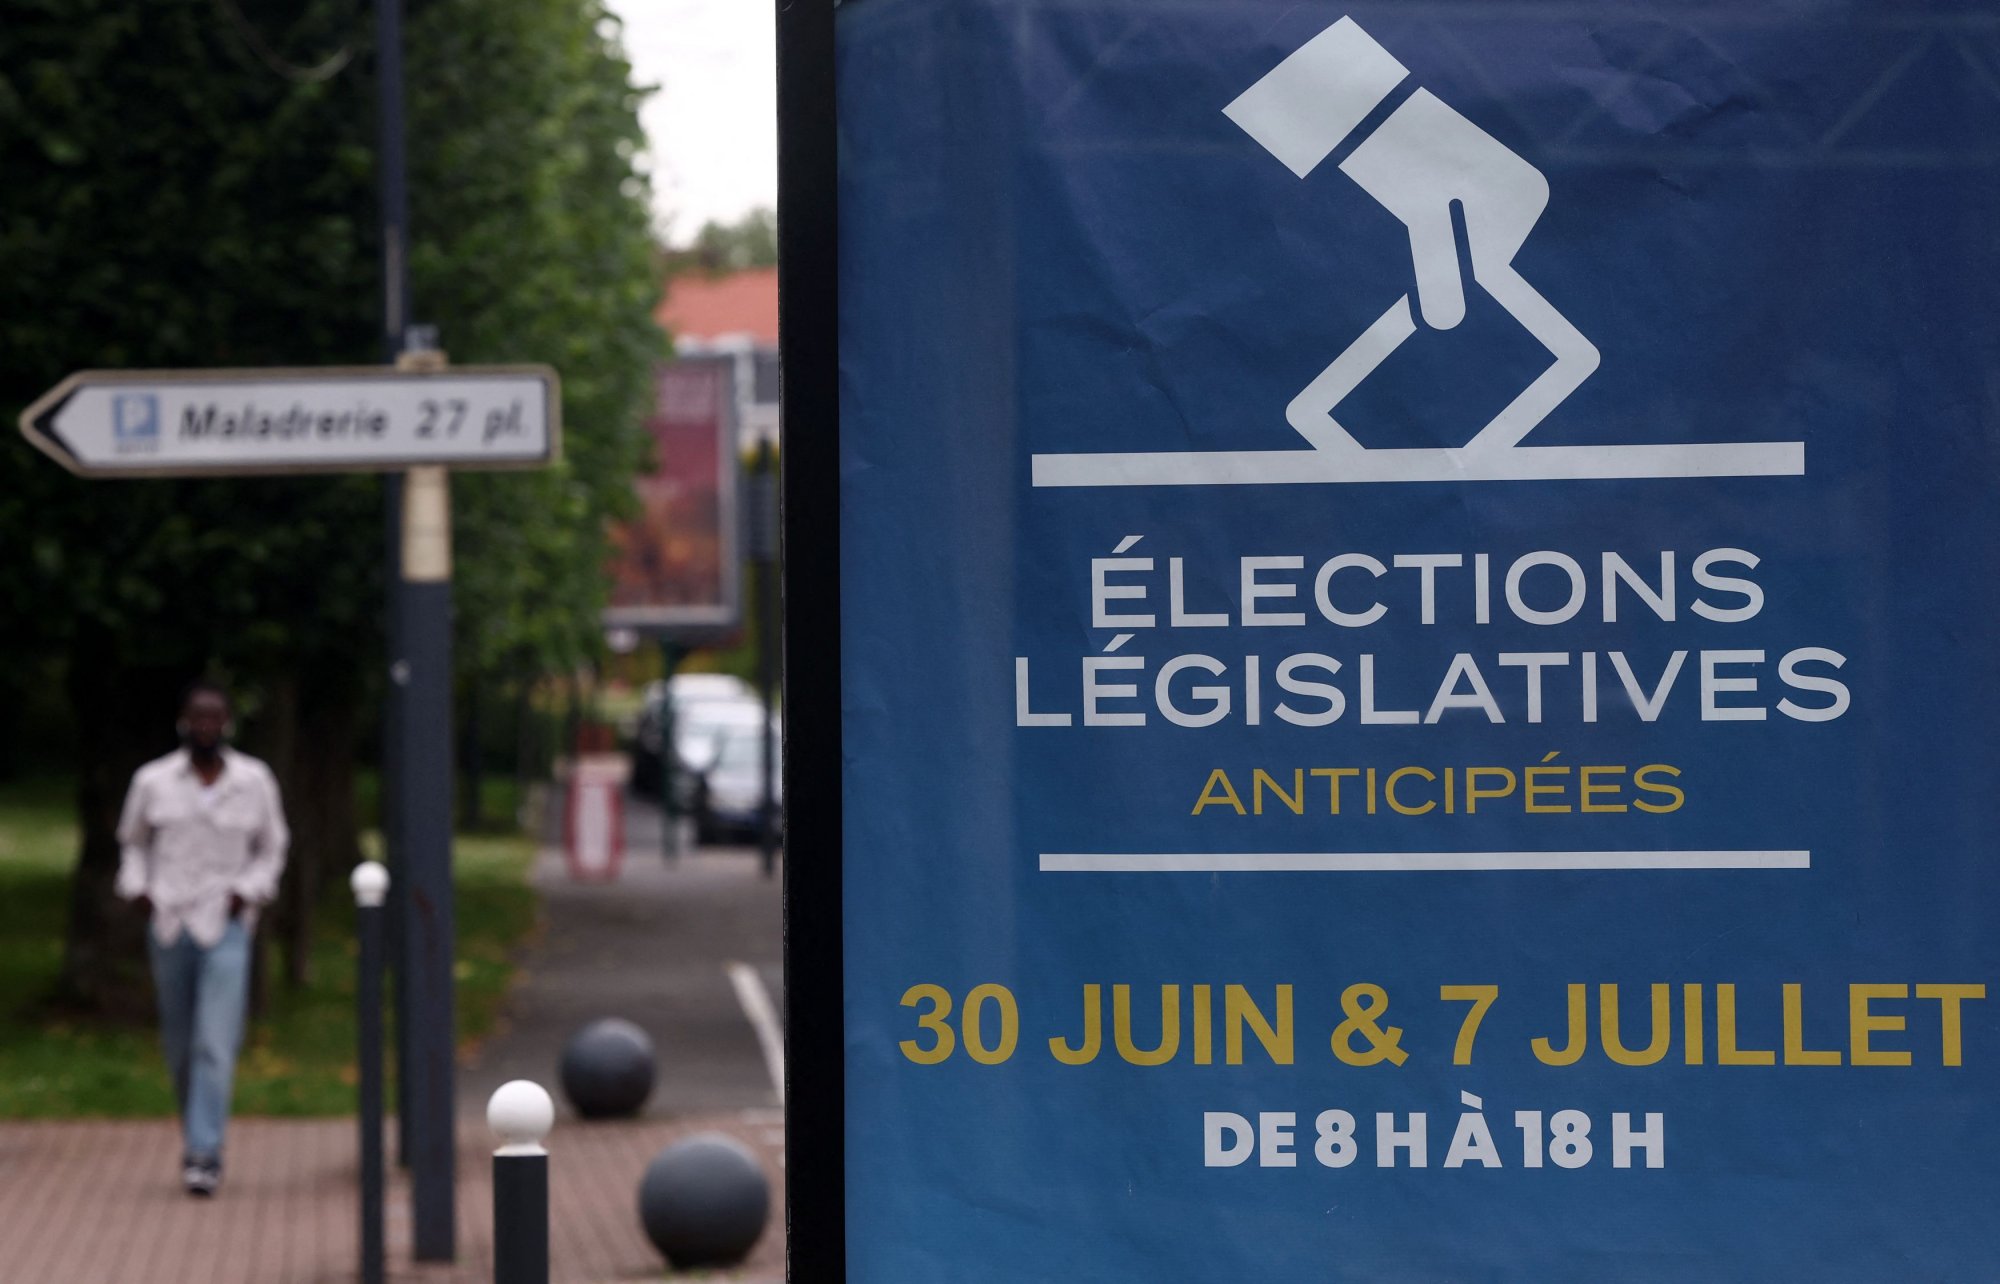 Εκλογές στη Γαλλία: Σε εξέλιξη ο δεύτερος γύρος με ενδεχόμενο η ακροδεξιά να έχει κοινοβουλευτική πλειοψηφία